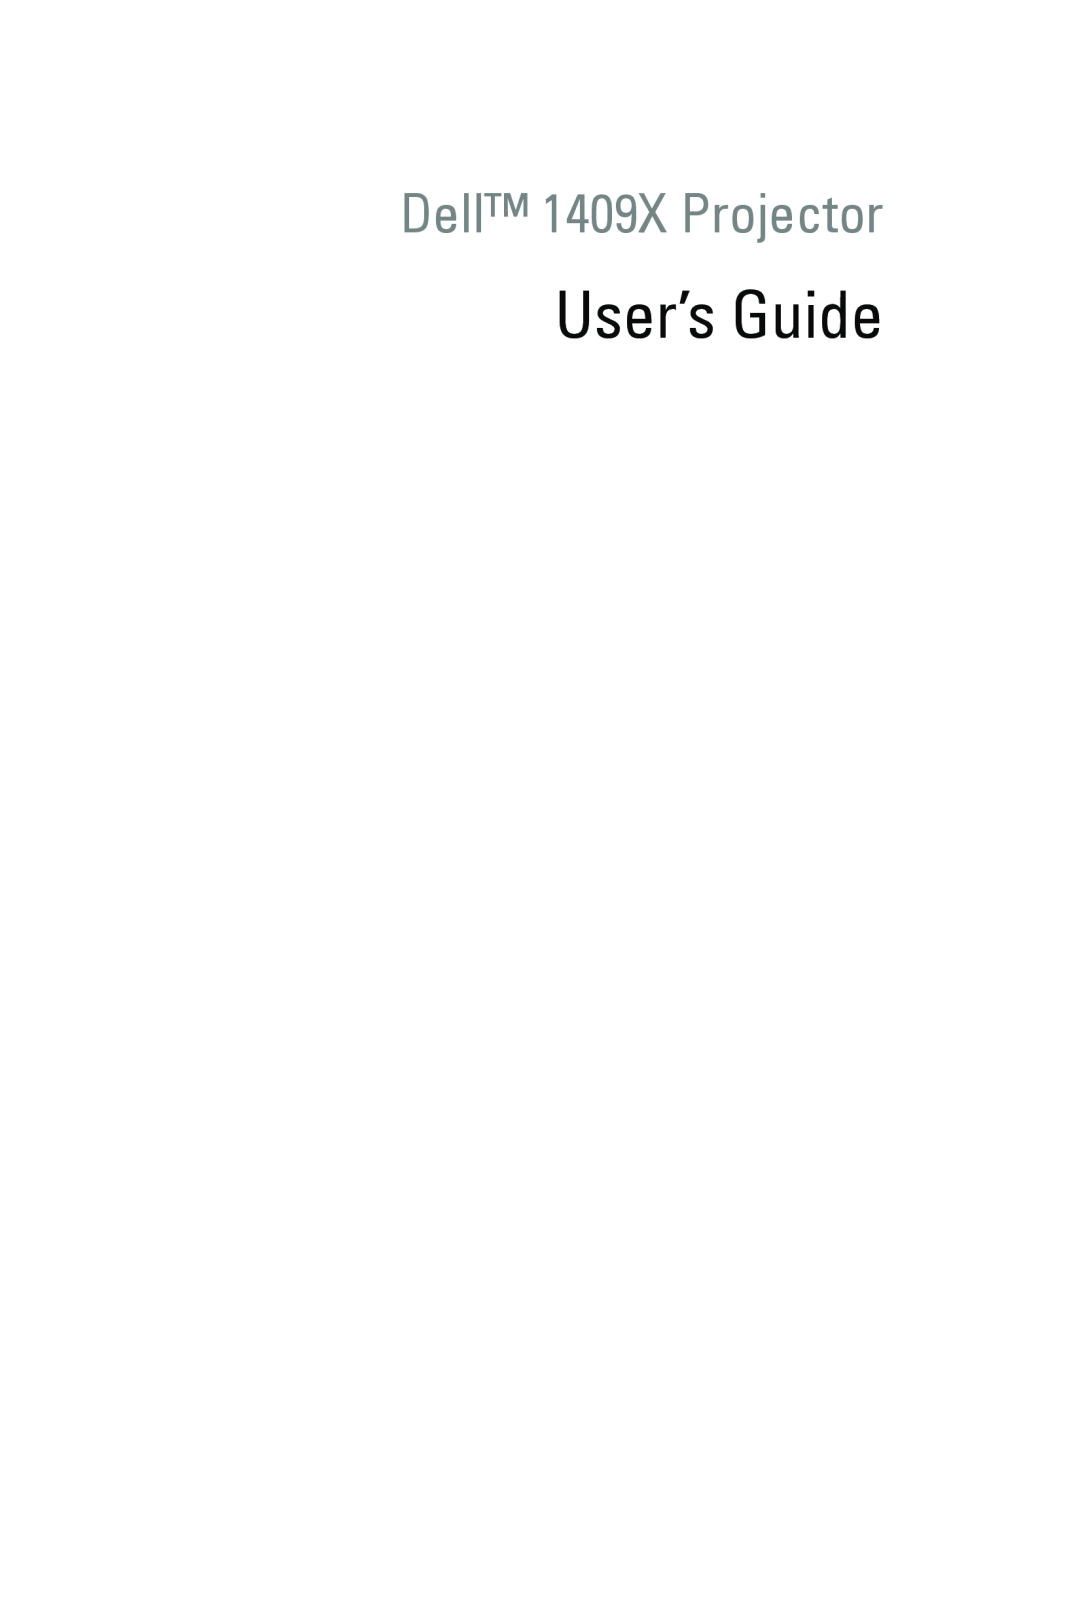 Dell manual User’s Guide, Dell 1409X Projector 